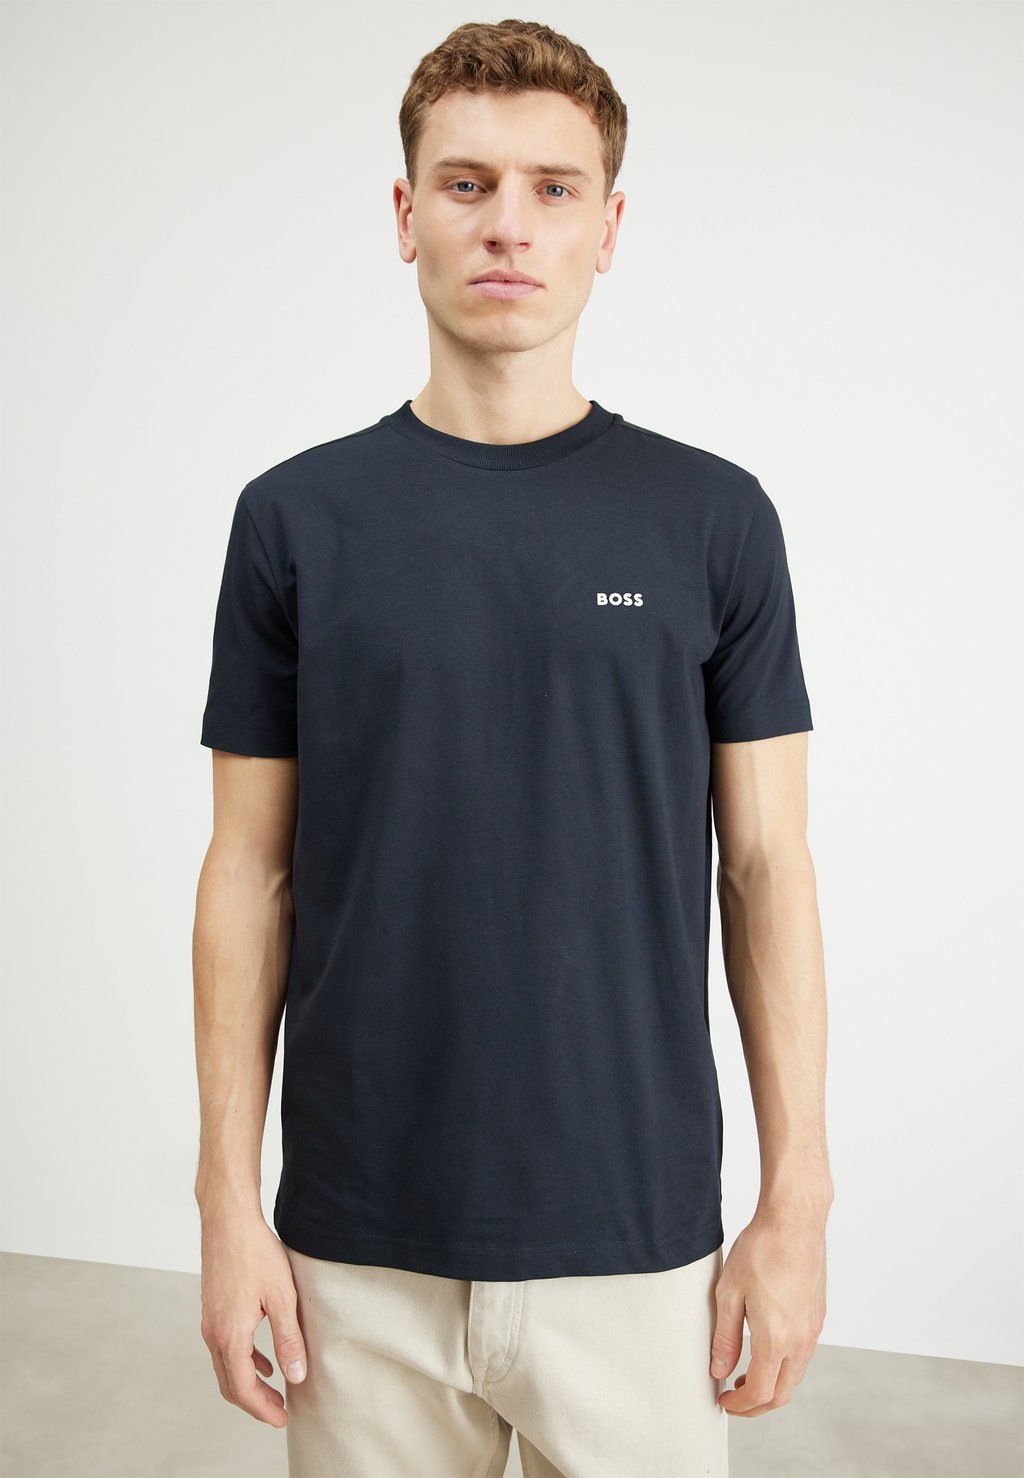 Базовая футболка BOSS, темно-синяя